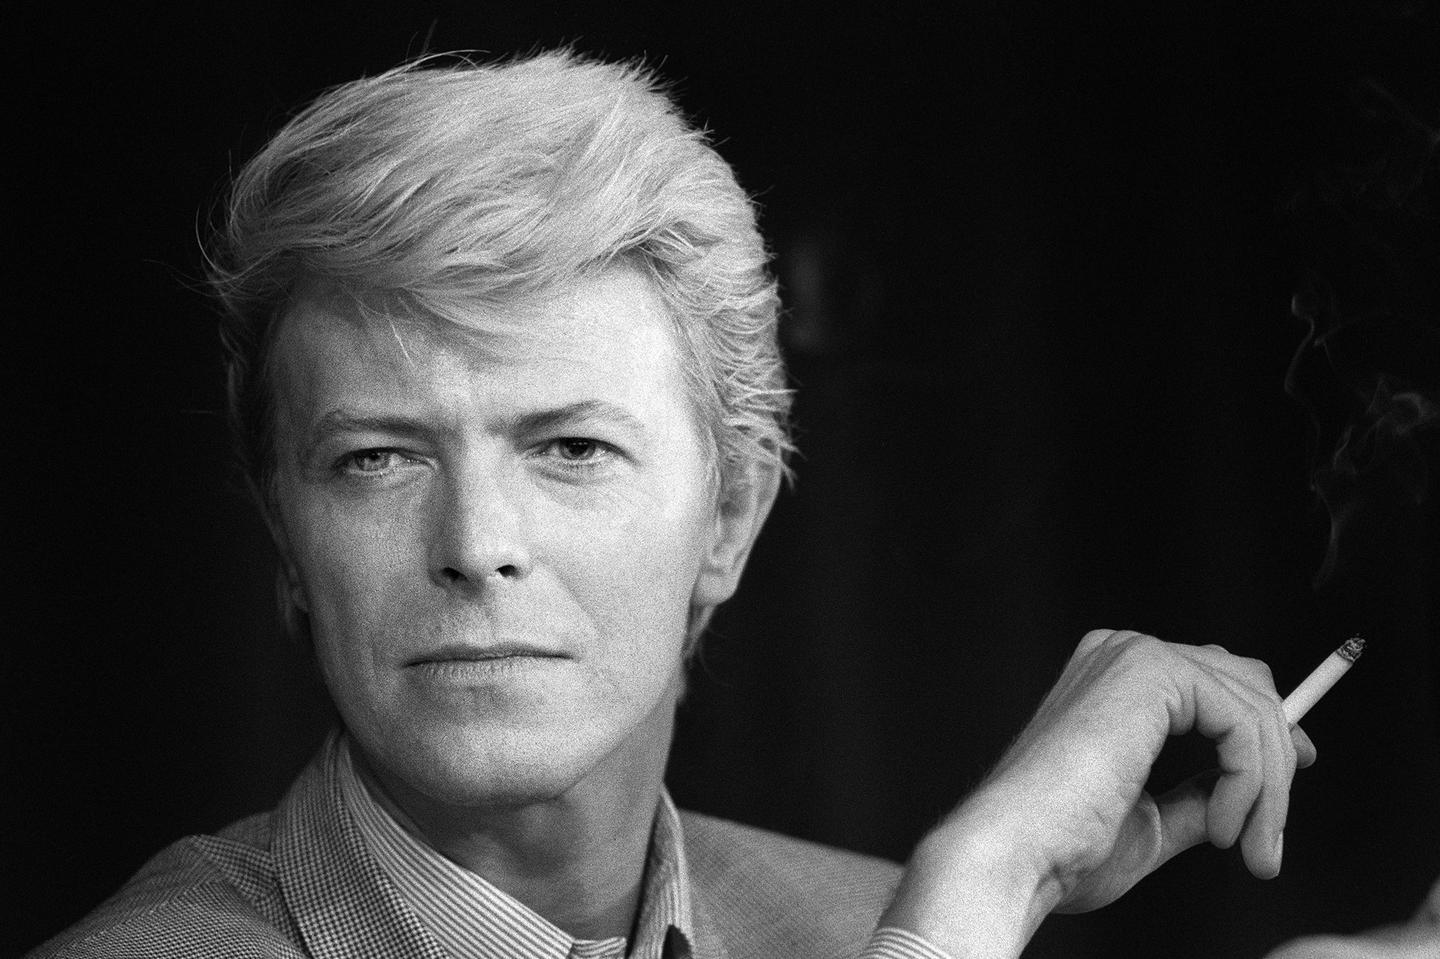 O Senhor dos Anéis | David Bowie poderia ter sido Gandalf nos filmes